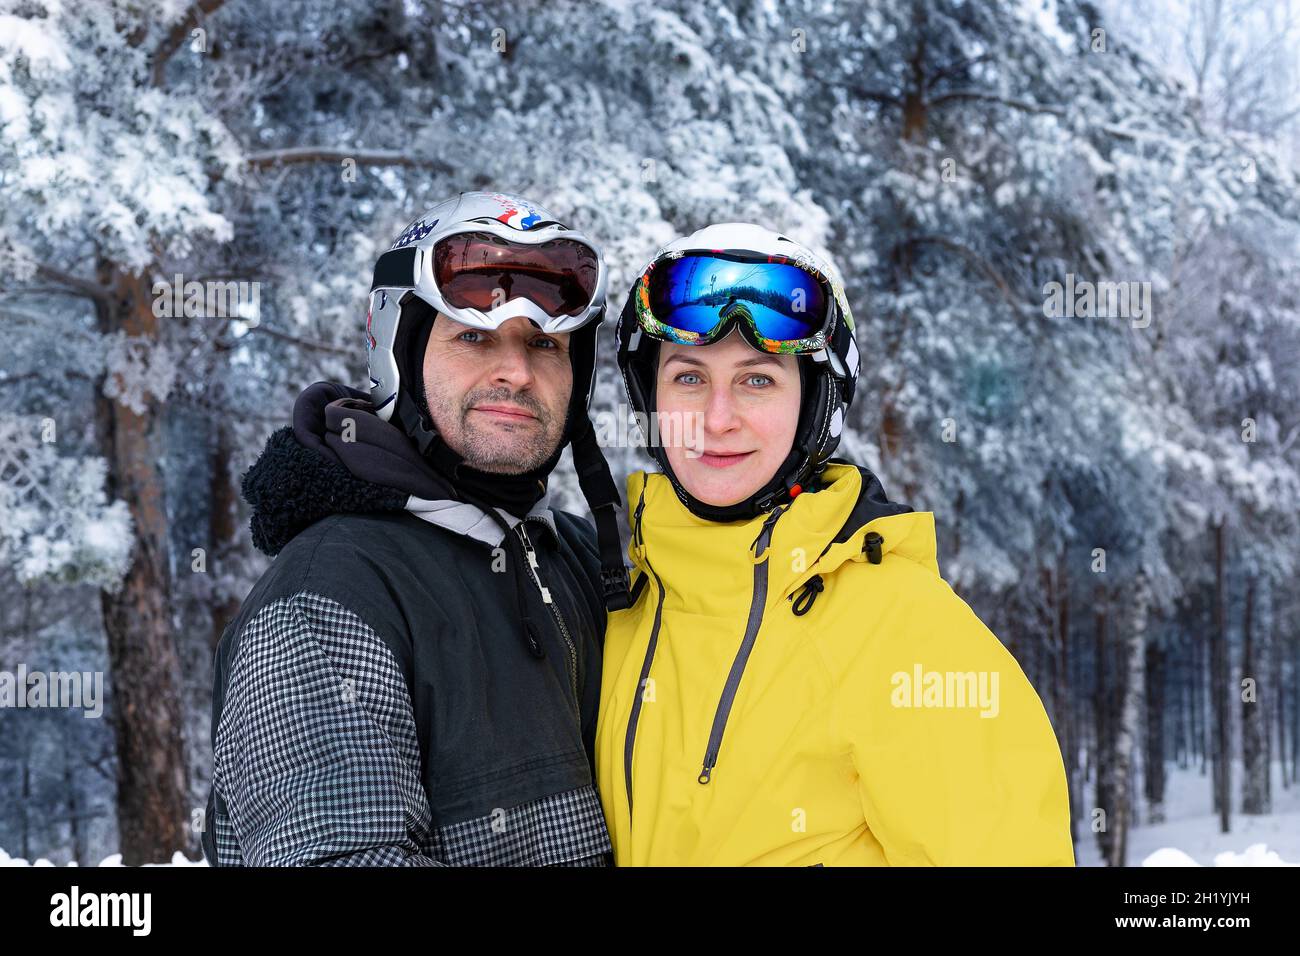 Portrait d'un homme et d'une femme d'origine caucasienne dans des casques et des lunettes de ski sur fond de forêt enneigée.Des vêtements de couleurs vives pour une vie active Banque D'Images